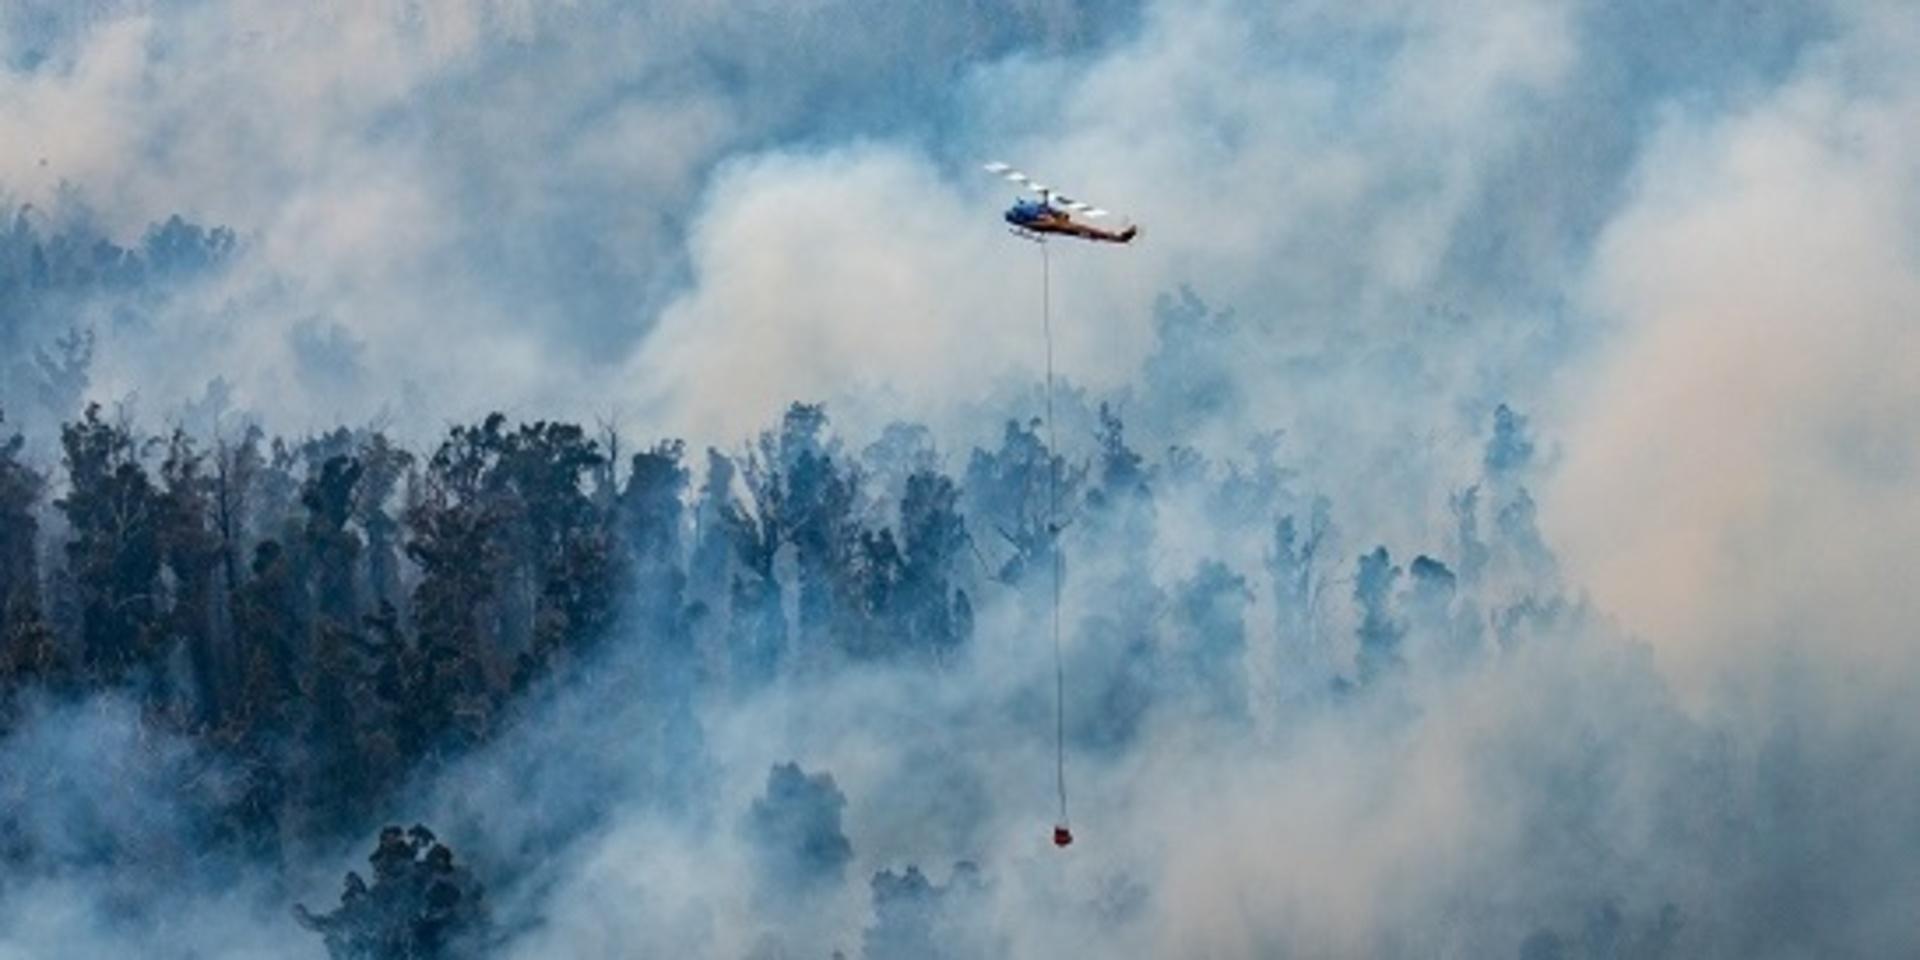 Tusentals turister riskerar att bli omringade av skogsbränder i East Gippsland I sydöstra Australien, enligt räddningstjänsten är det för sent för många av dem att riskfritt ta sig i säkerhet. 